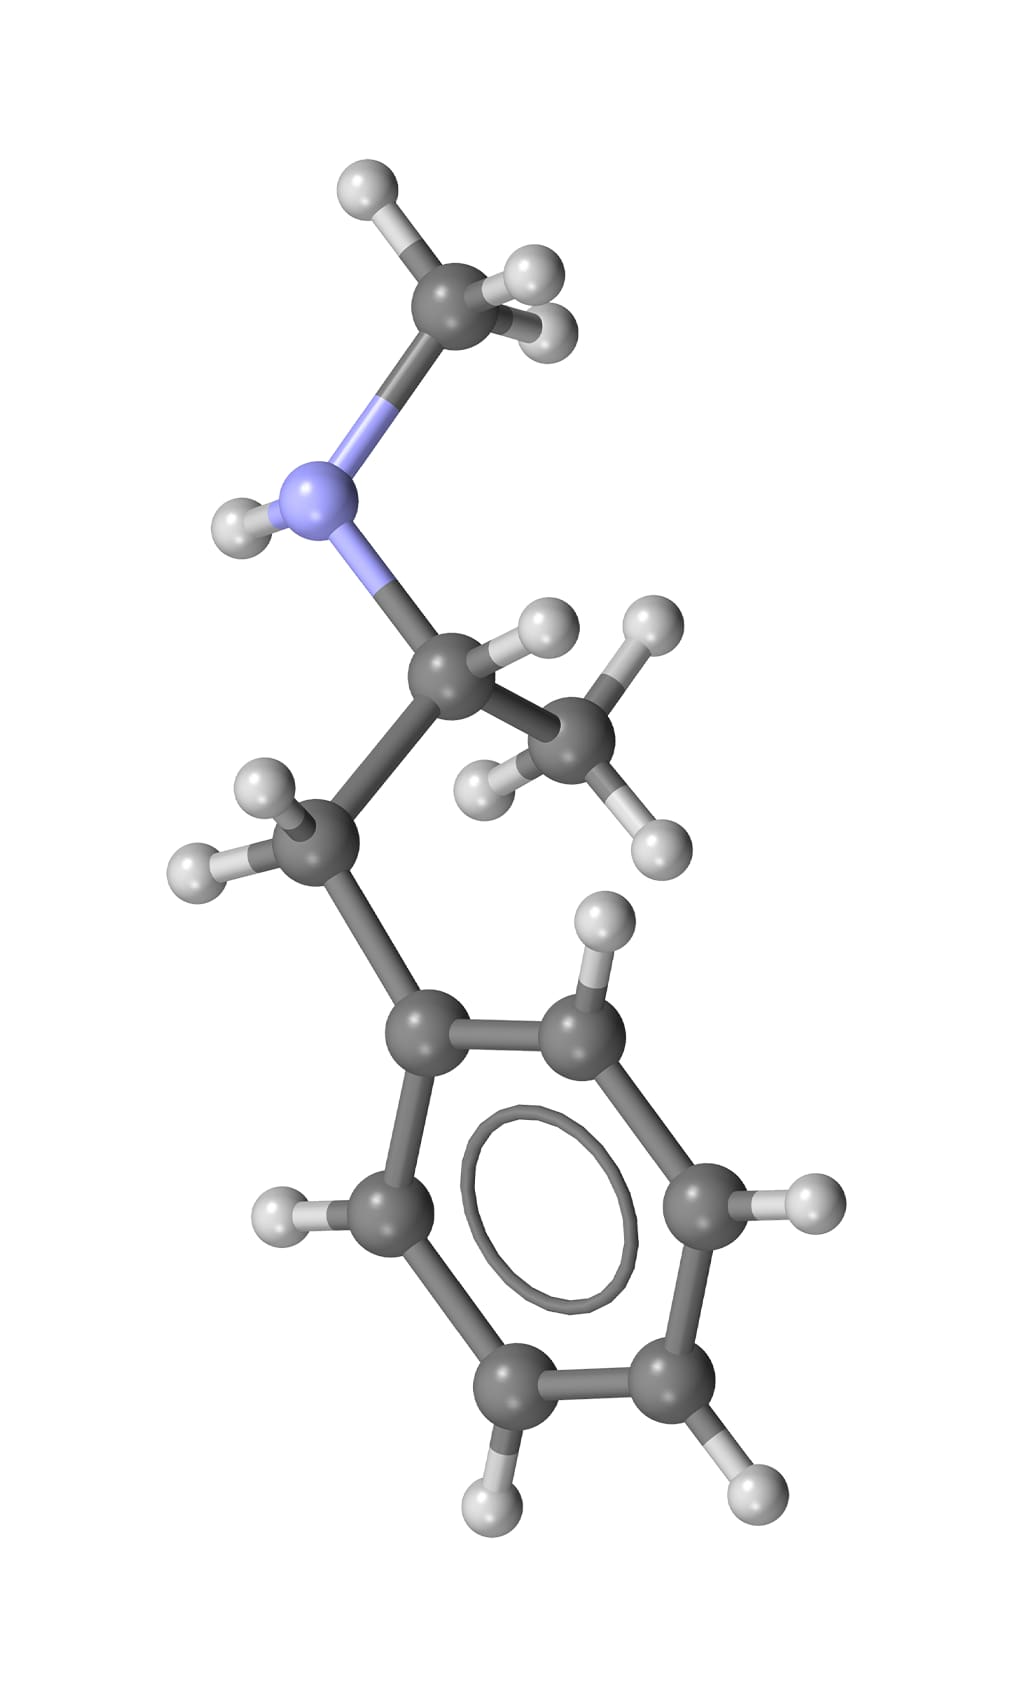 Molecular model of methamphetamine.